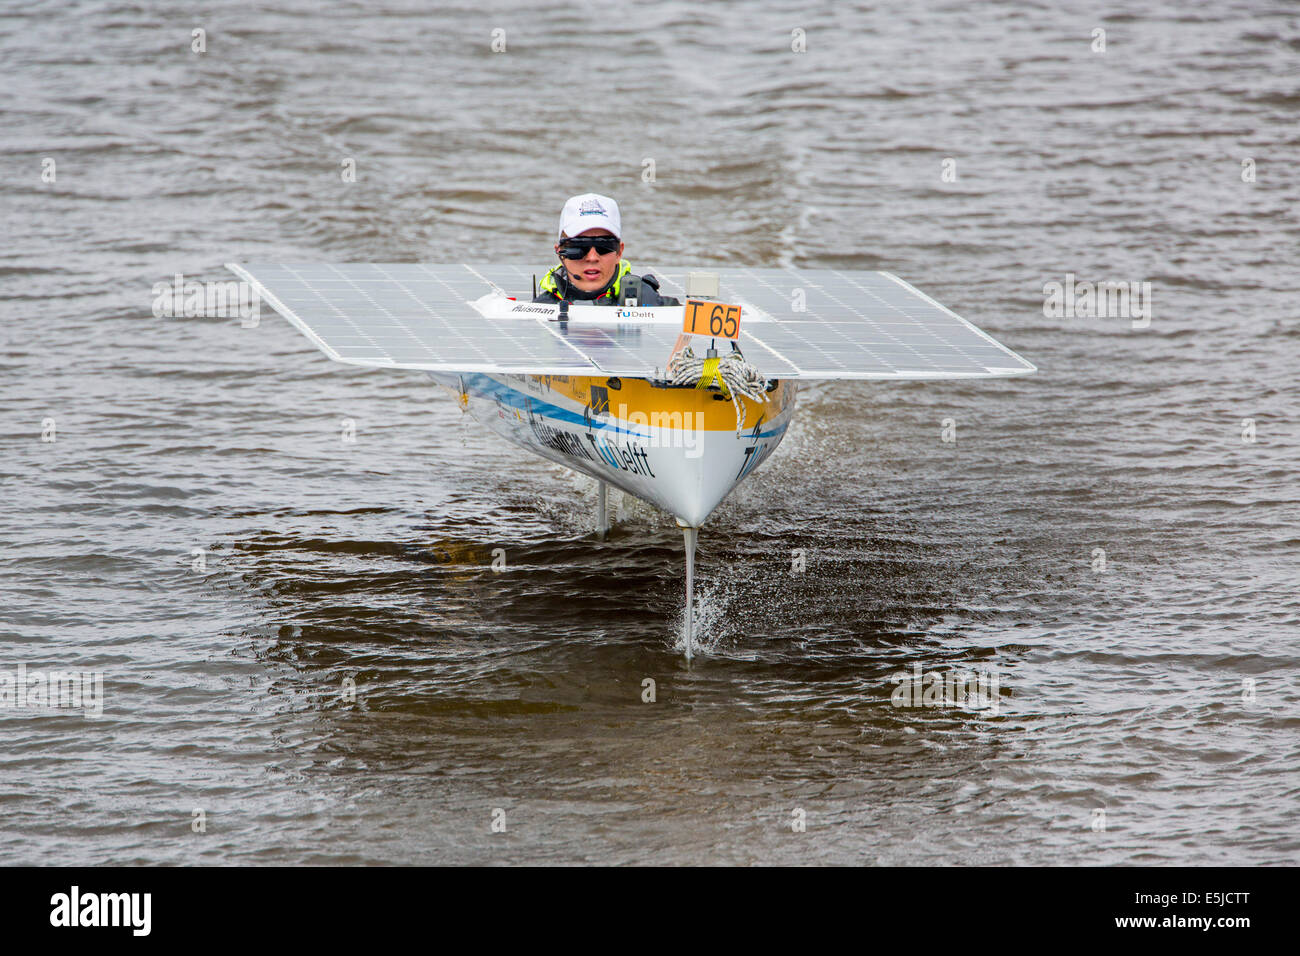 Niederlande, Franeker, DONG Solar Challenge 2014 Rennen für Solarboote. Tragflächenboot der TU Delft Solarboot Hochschulteam Stockfoto